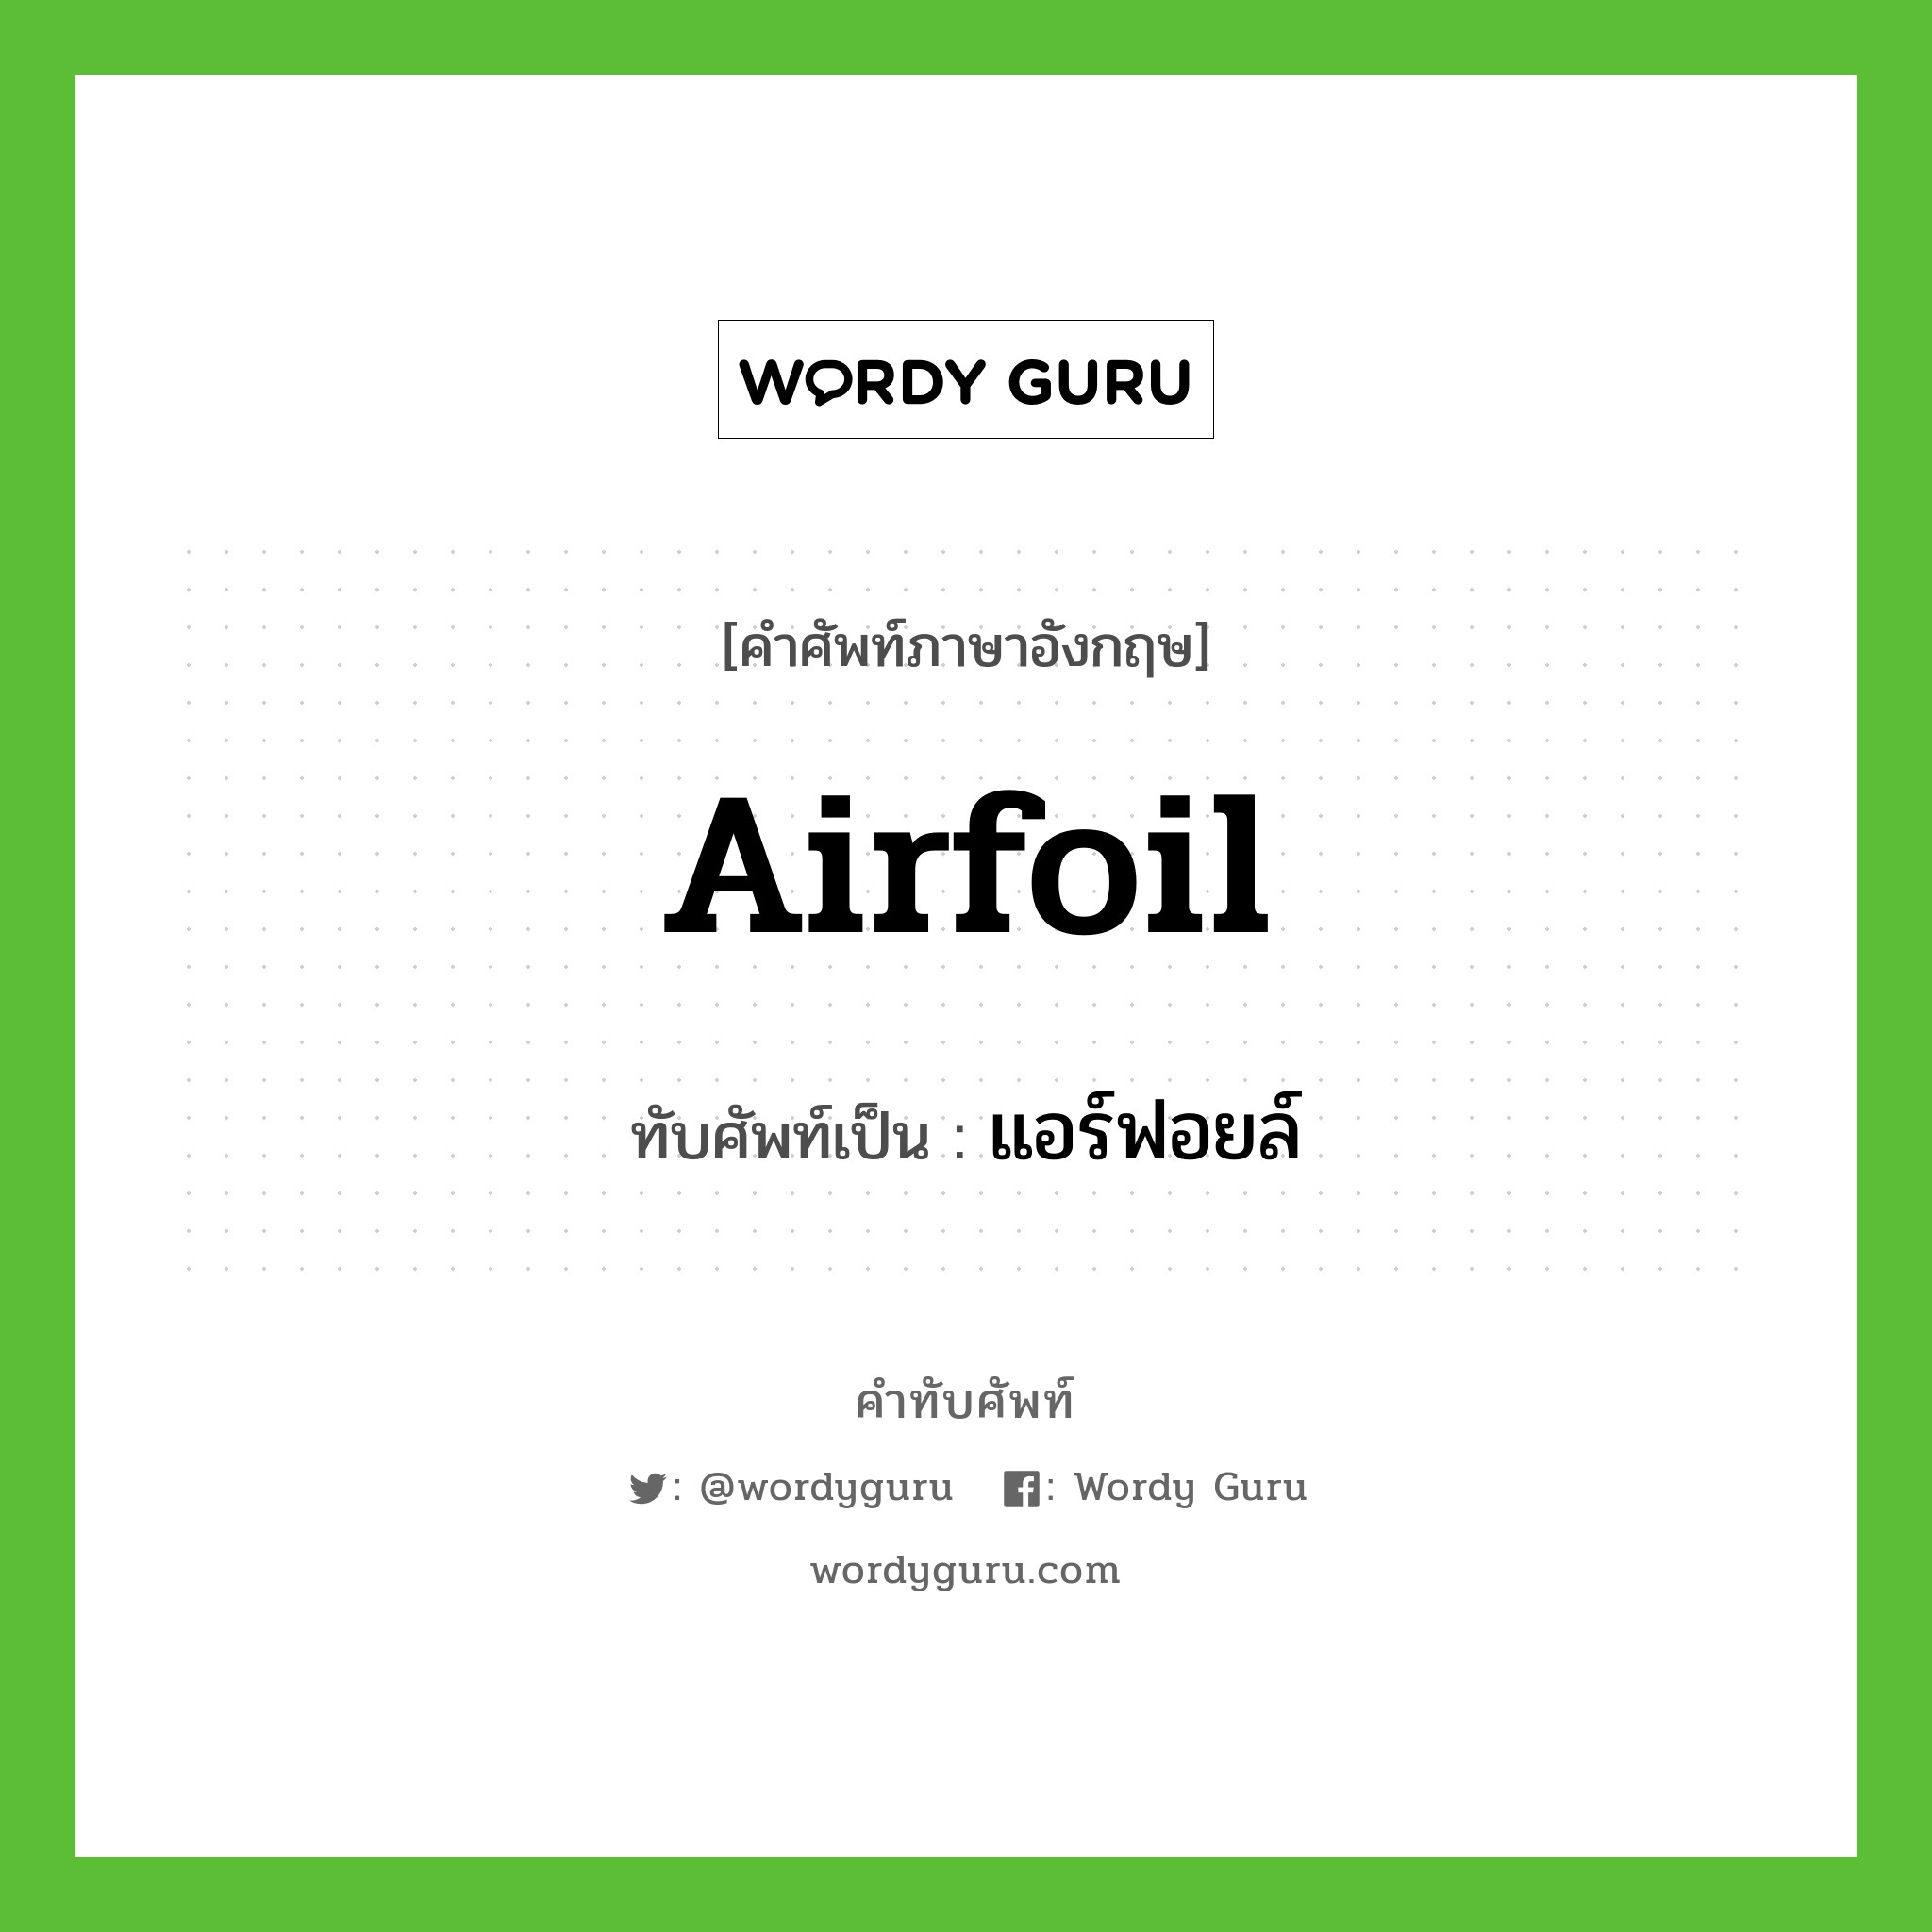 airfoil เขียนเป็นคำไทยว่าอะไร?, คำศัพท์ภาษาอังกฤษ airfoil ทับศัพท์เป็น แอร์ฟอยล์